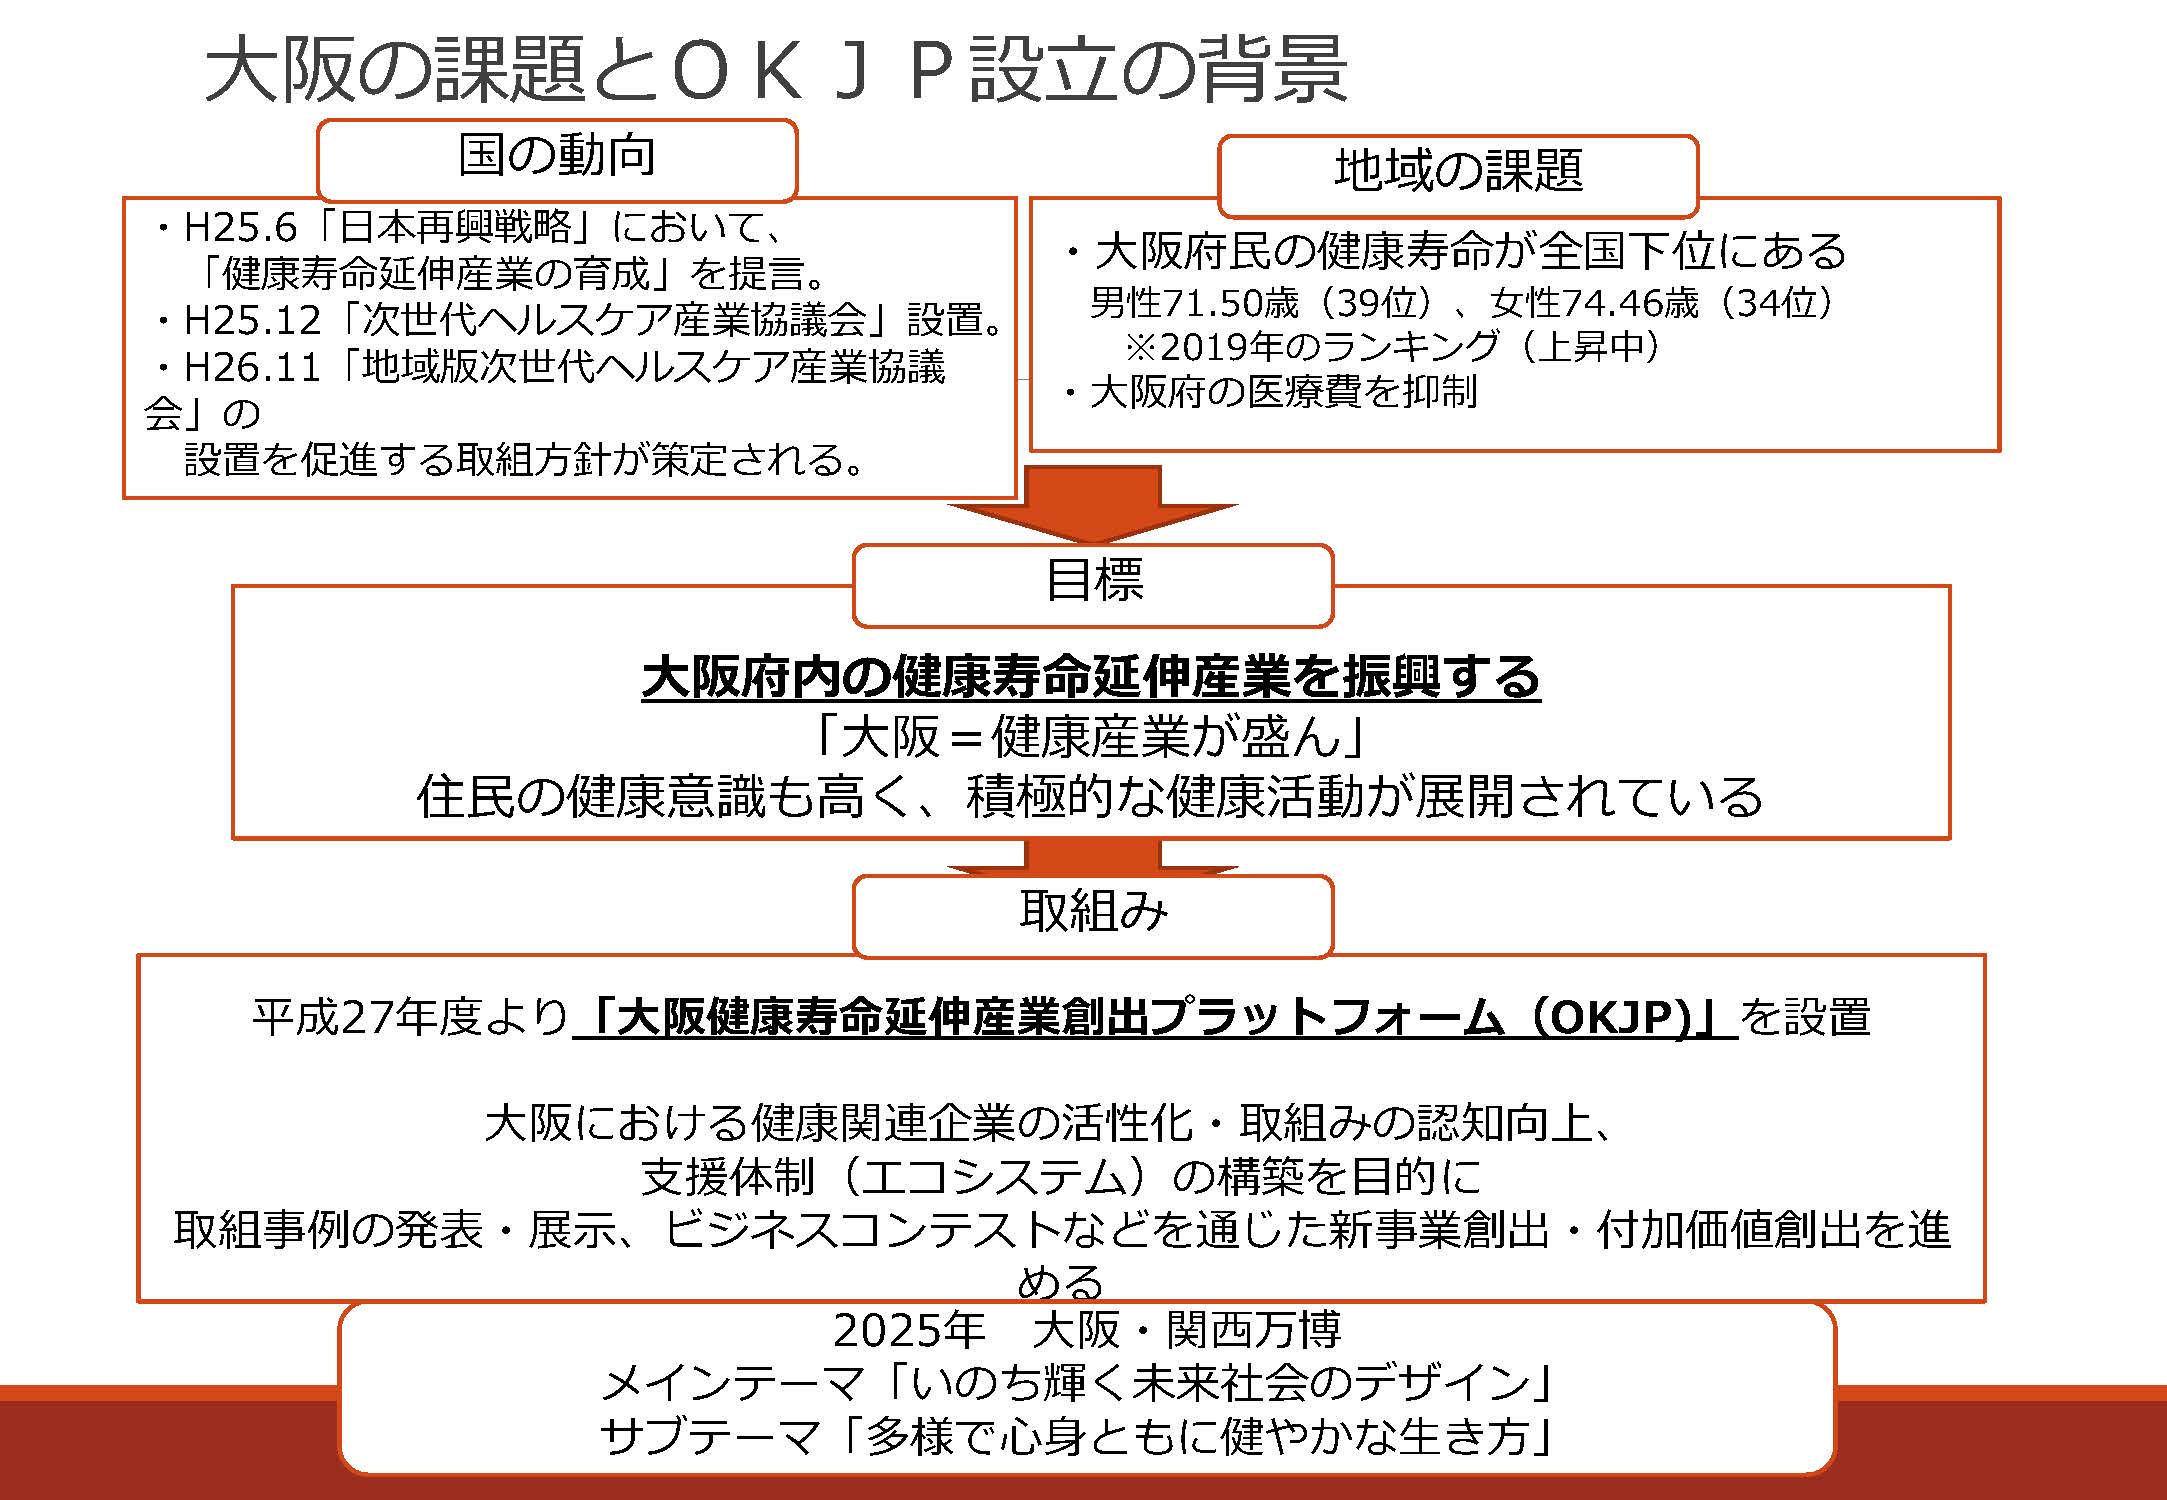 大阪の課題とOKJP設立の背景